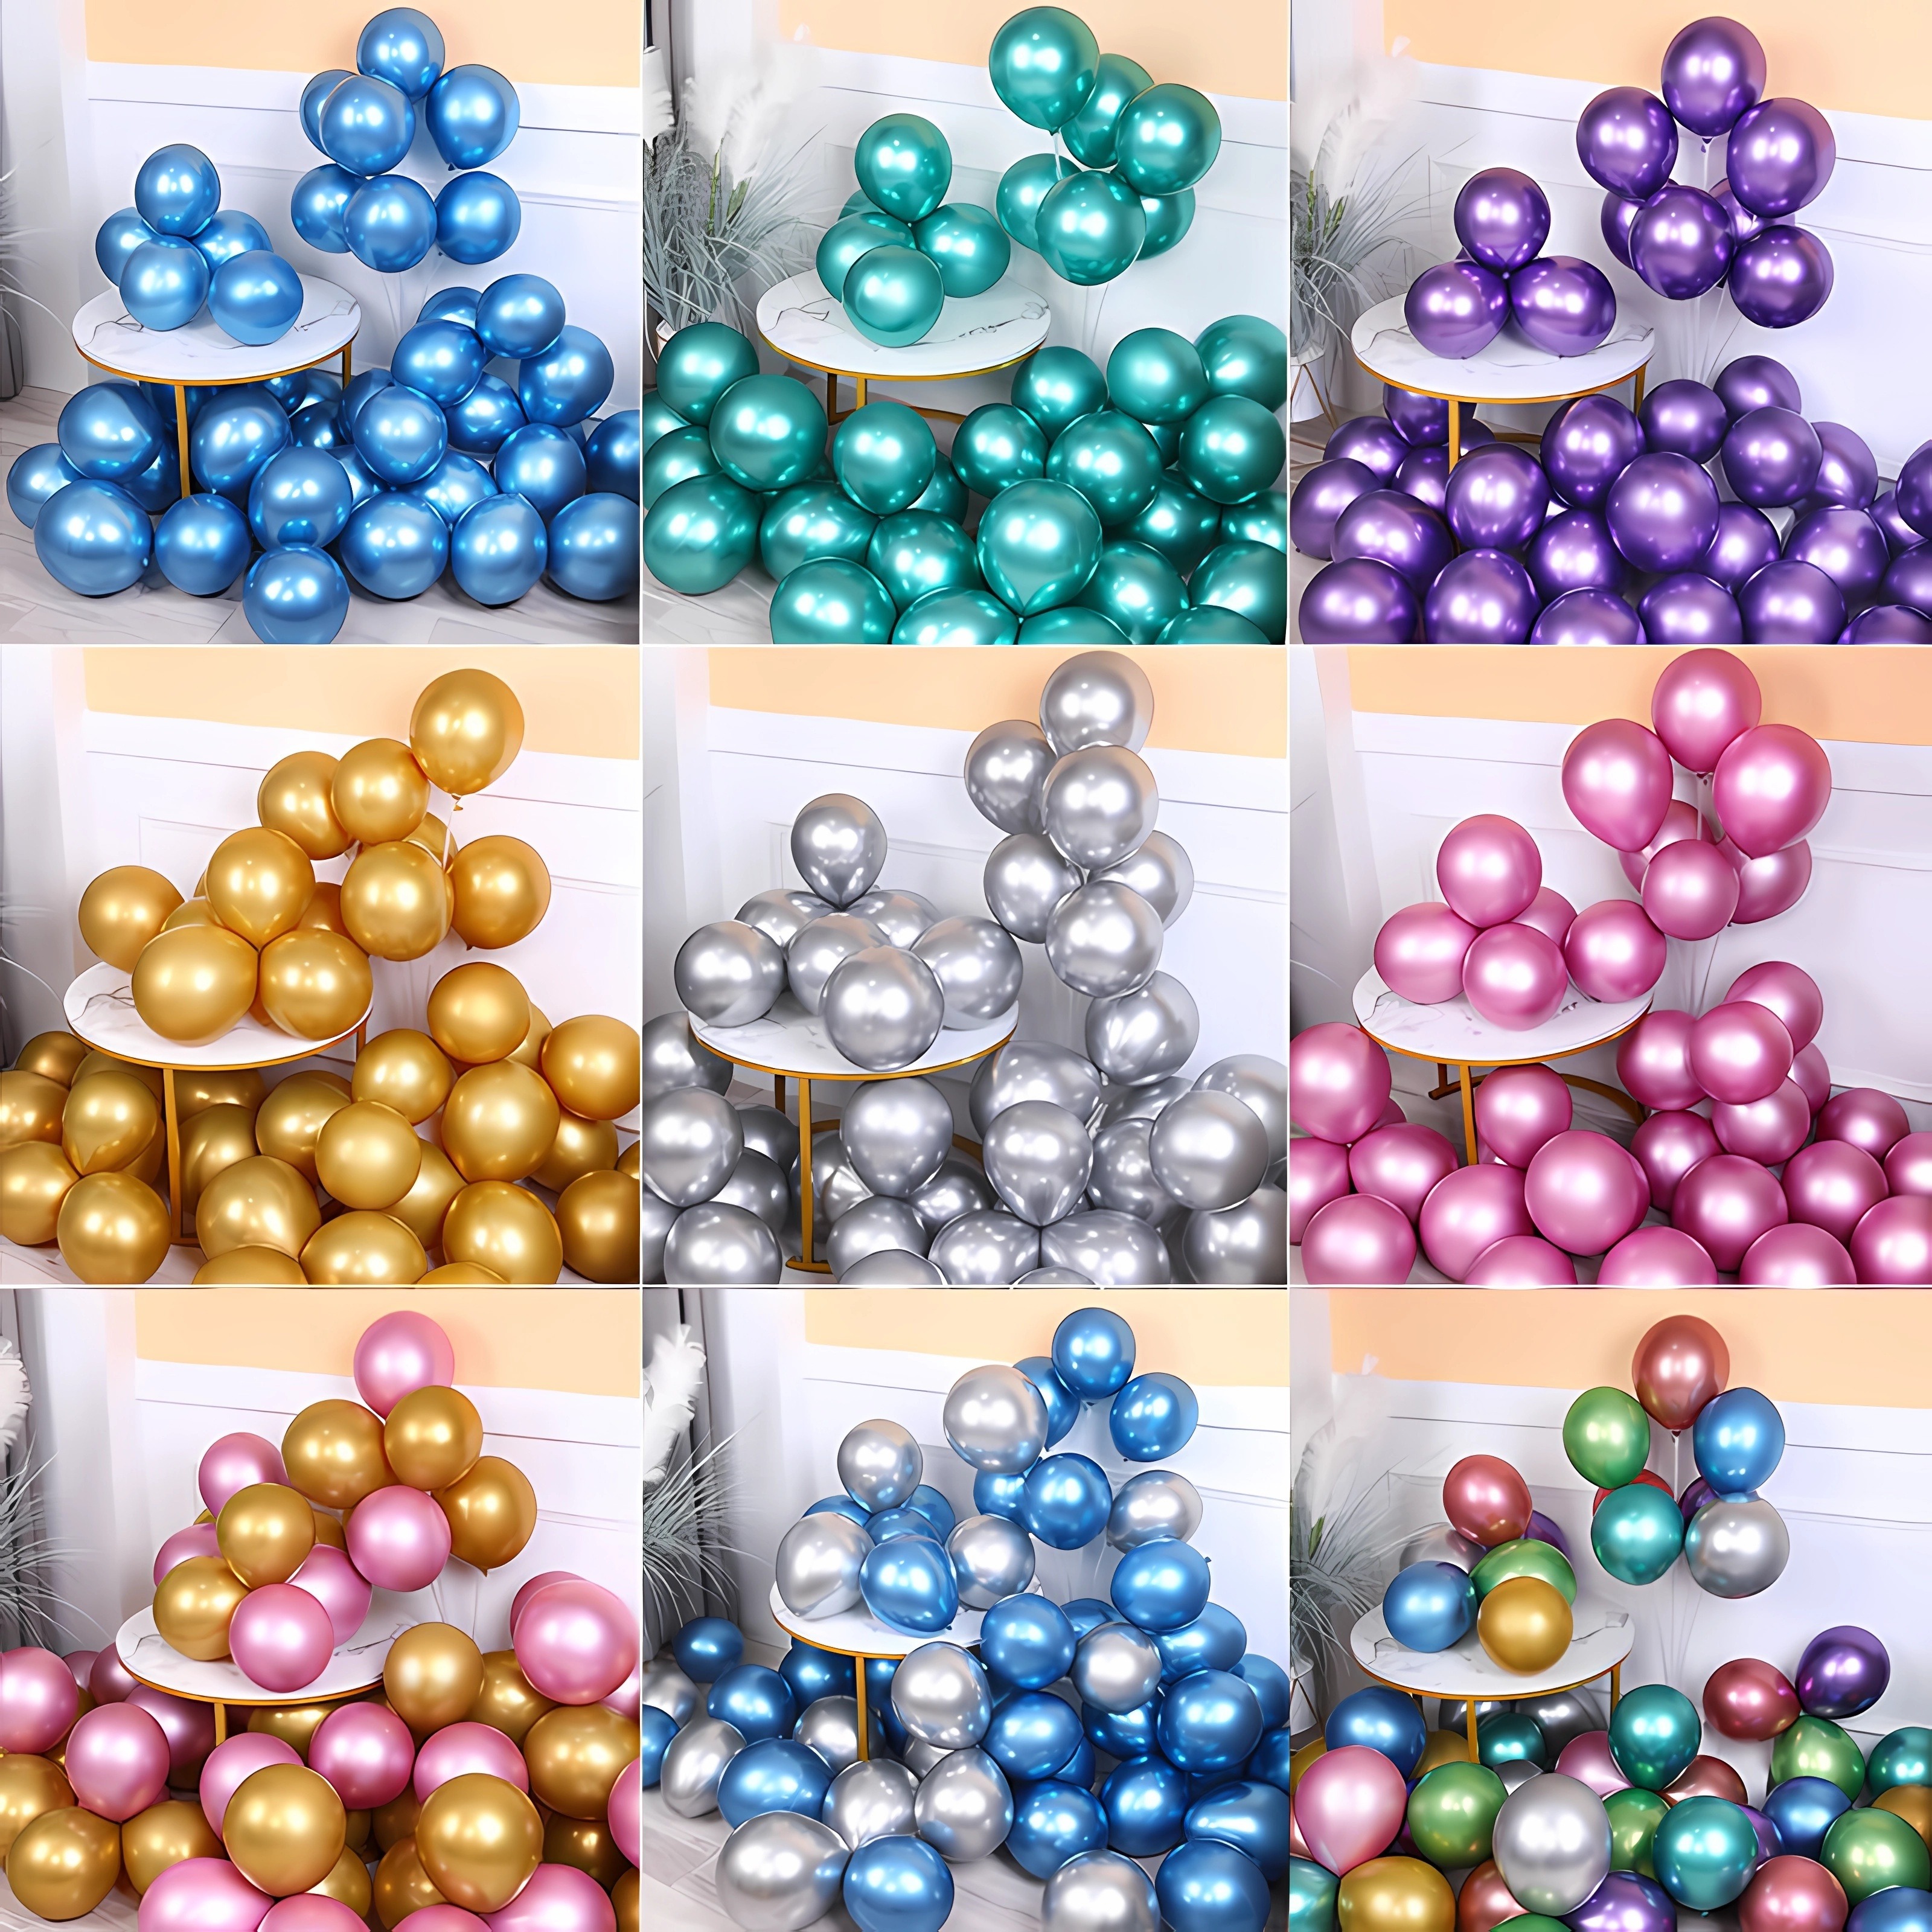 RUBFAC Globos plateados, 120 globos plateados metálicos de 5 pulgadas,  globos de látex plateados gruesos para cumpleaños, boda, baby shower